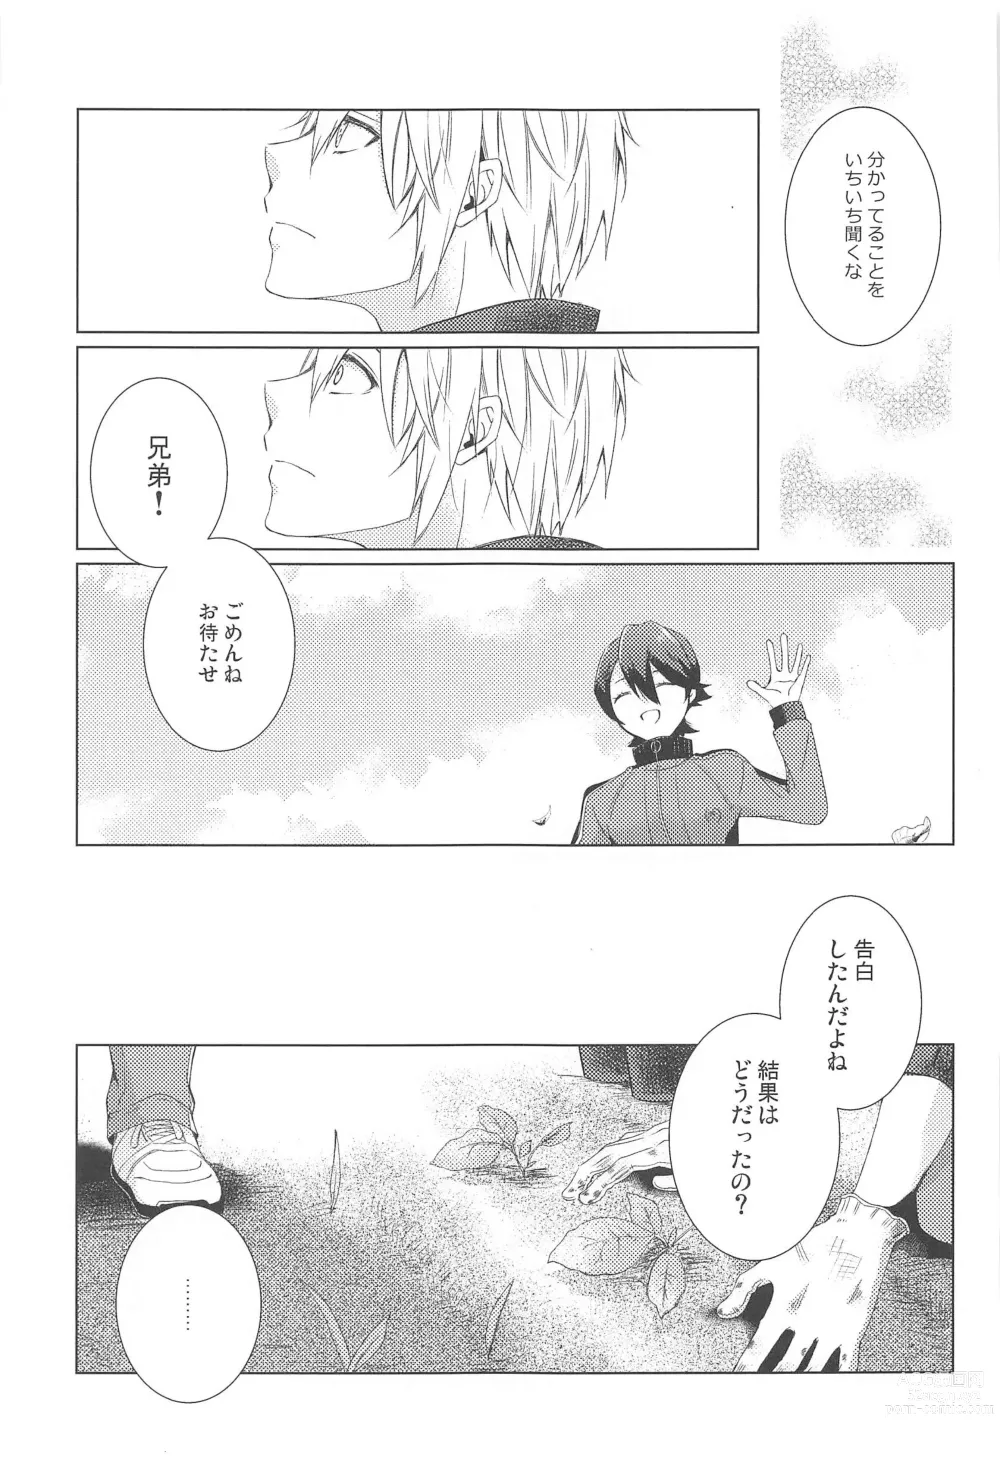 Page 9 of doujinshi Hajimete wa Jouzu ni Dekinai